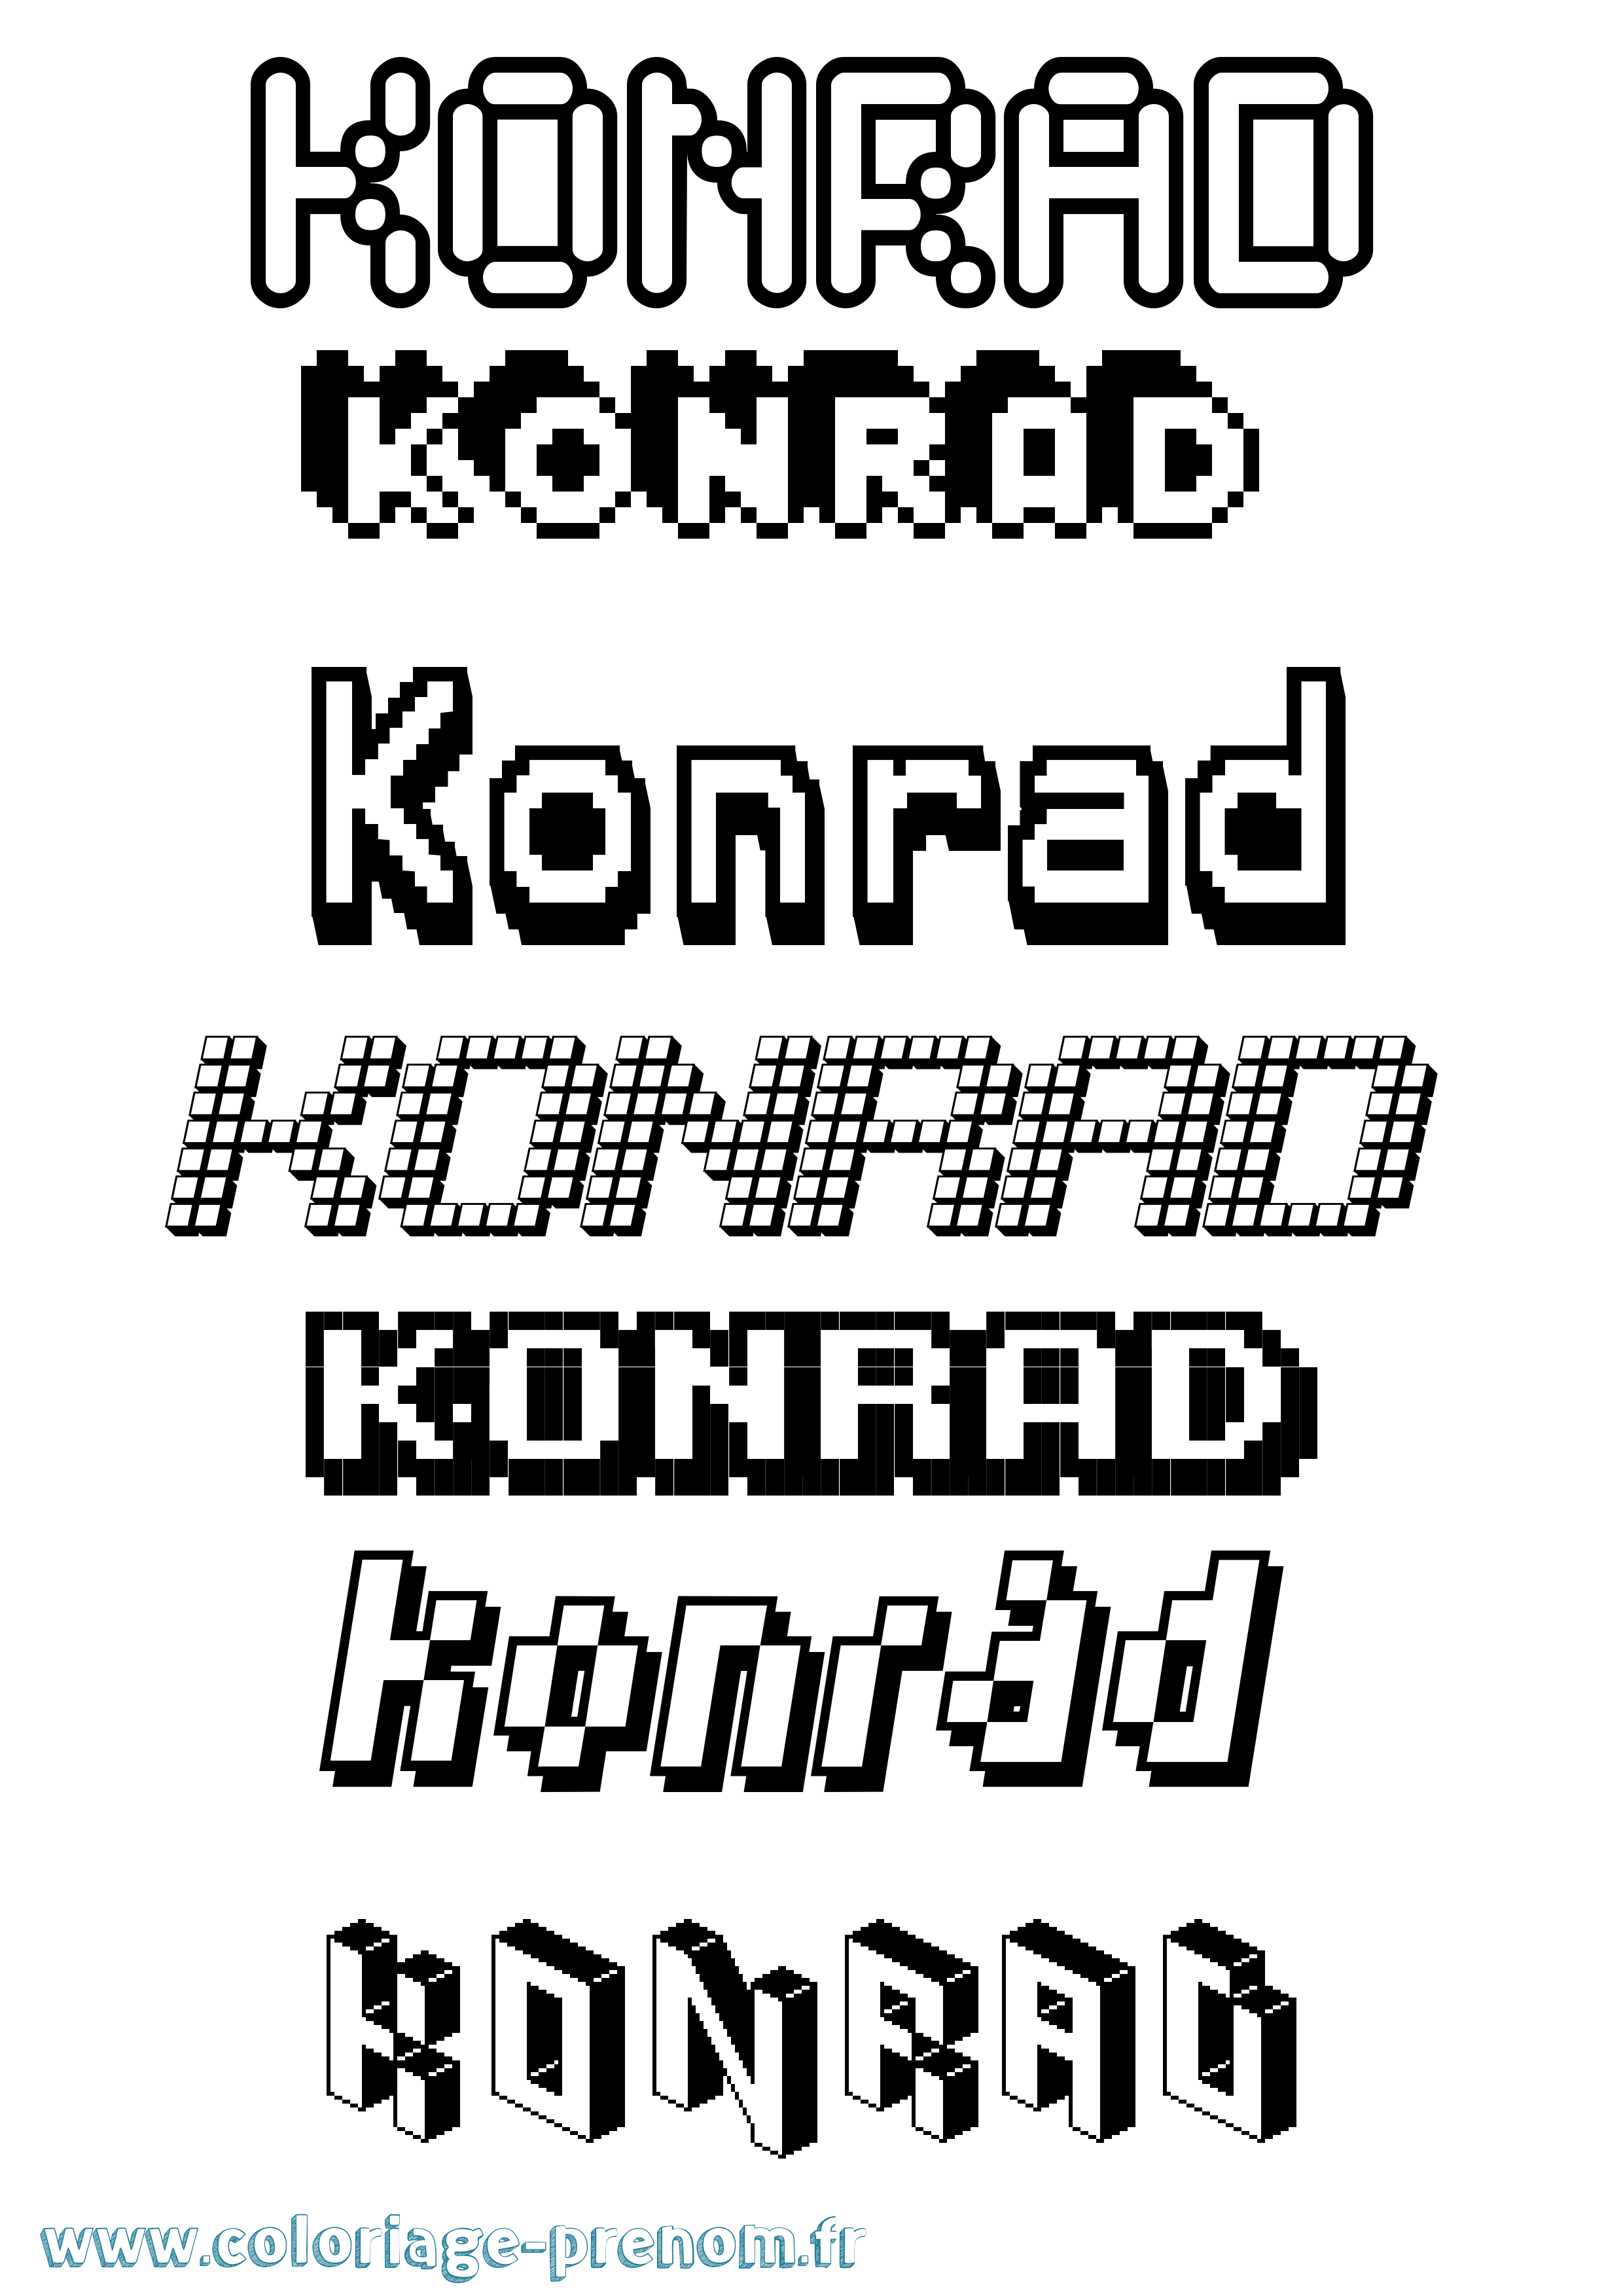 Coloriage prénom Konrad Pixel